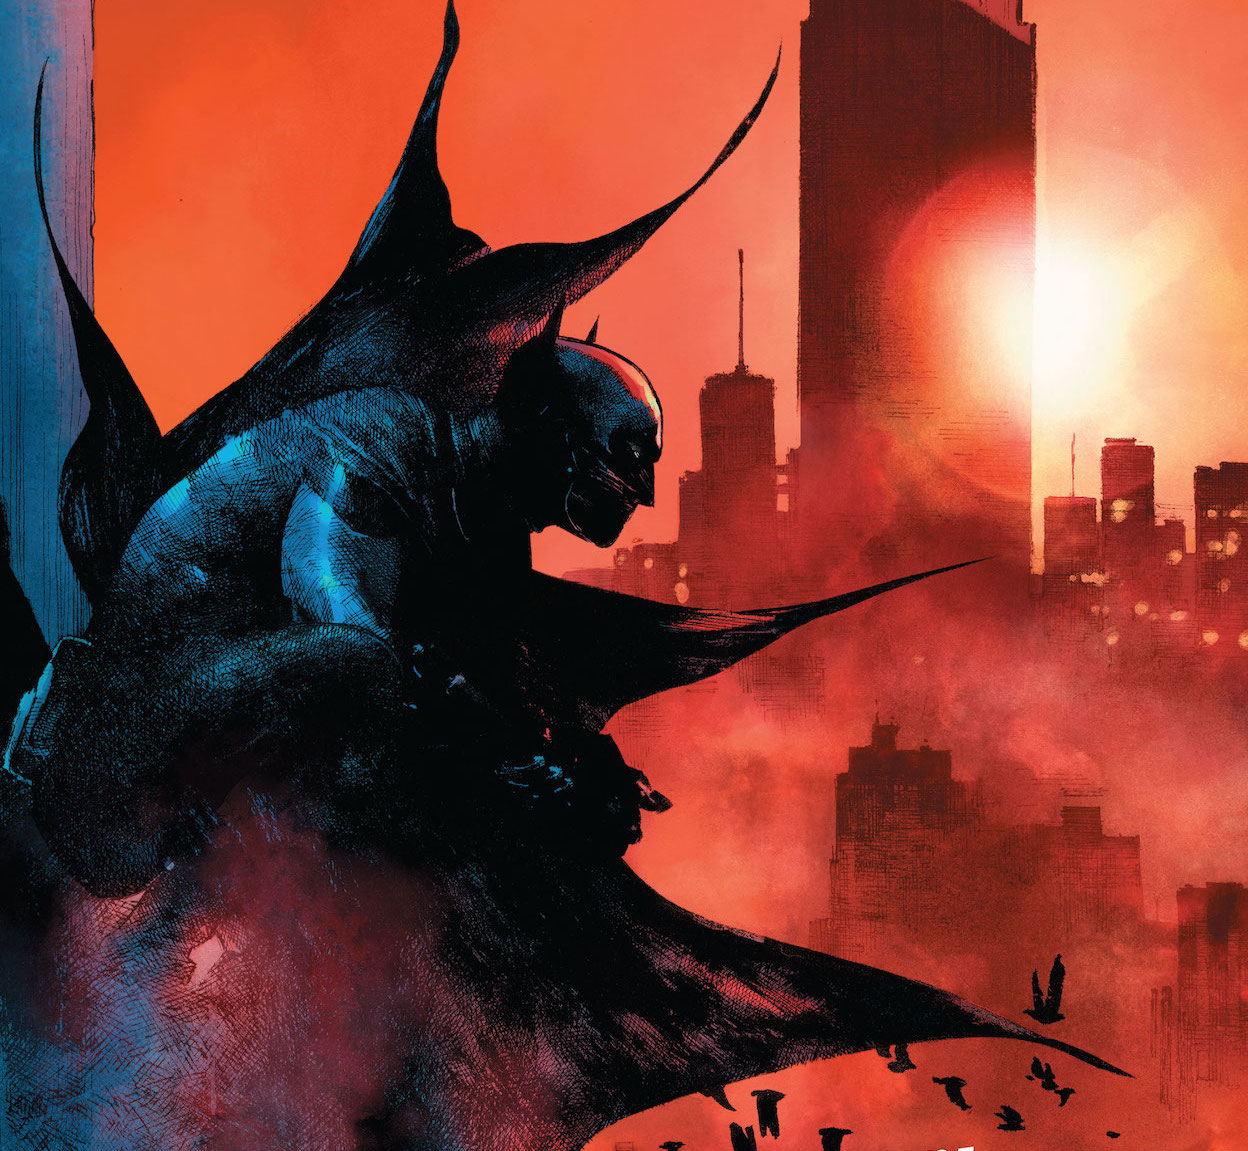 'I Am Batman' #6 mixes politics with serial killers in a New York narrative